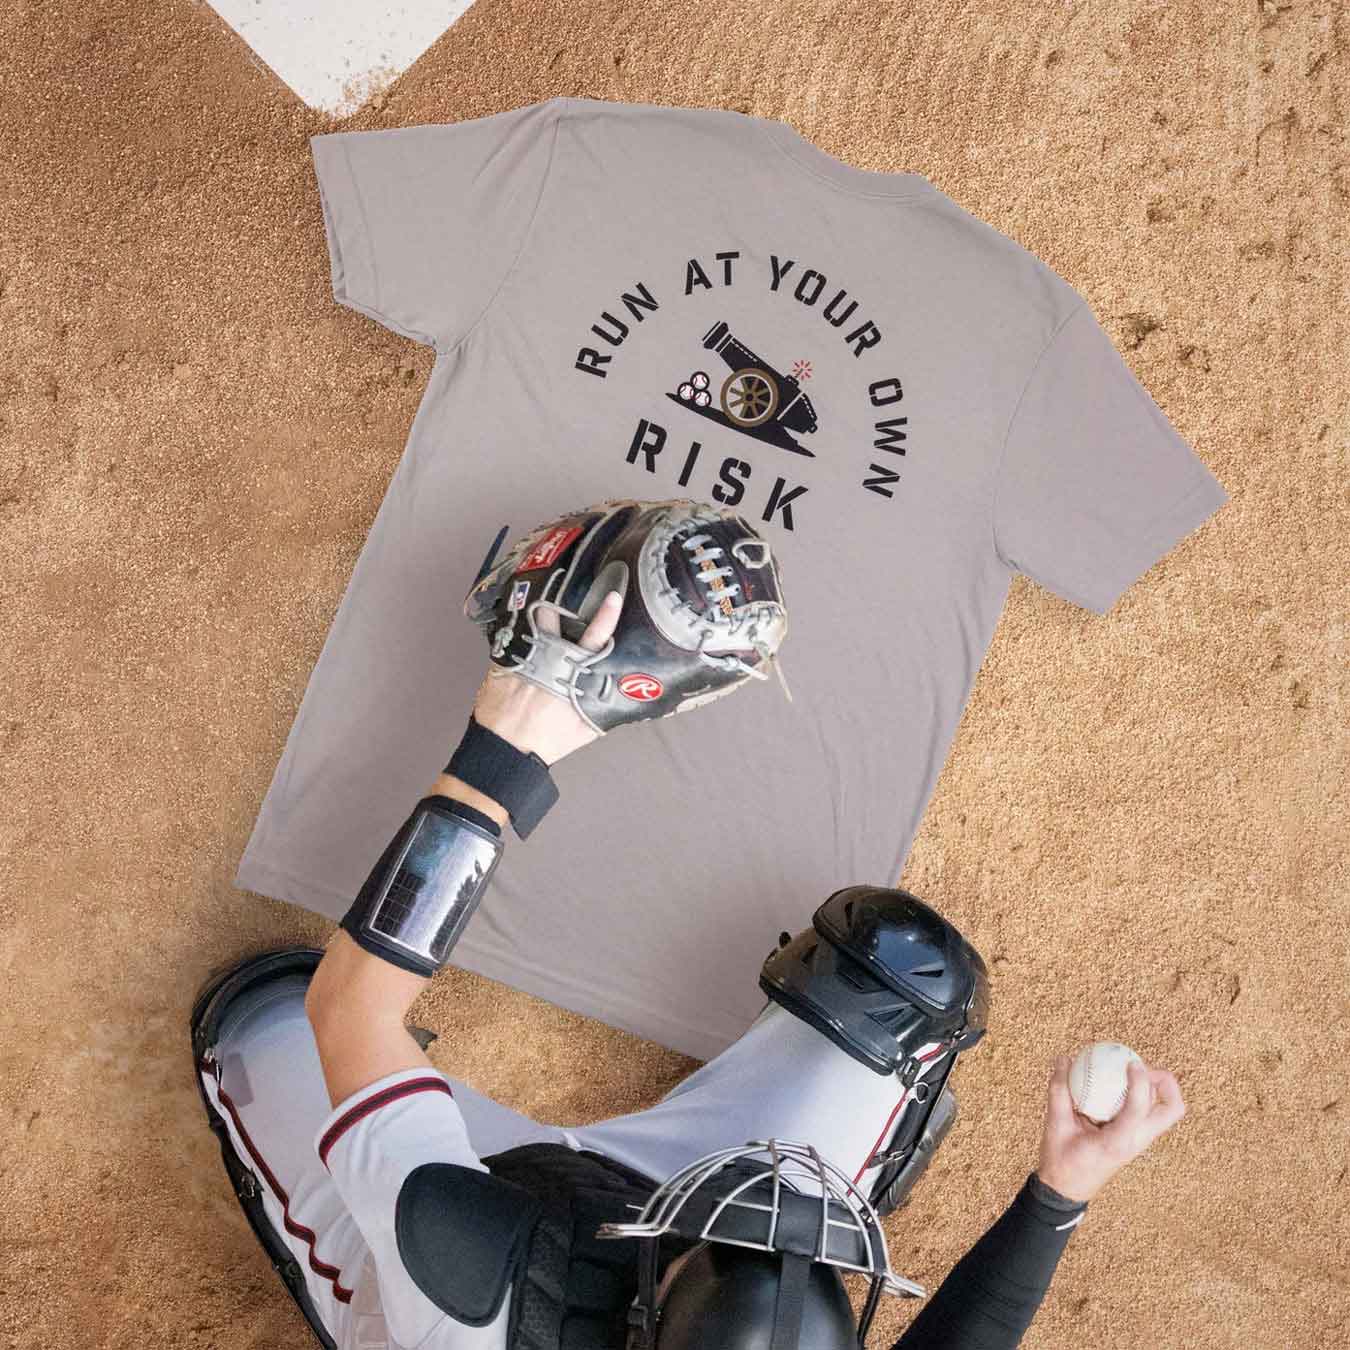 Baseballism Run At Your Own Risk T-Shirt